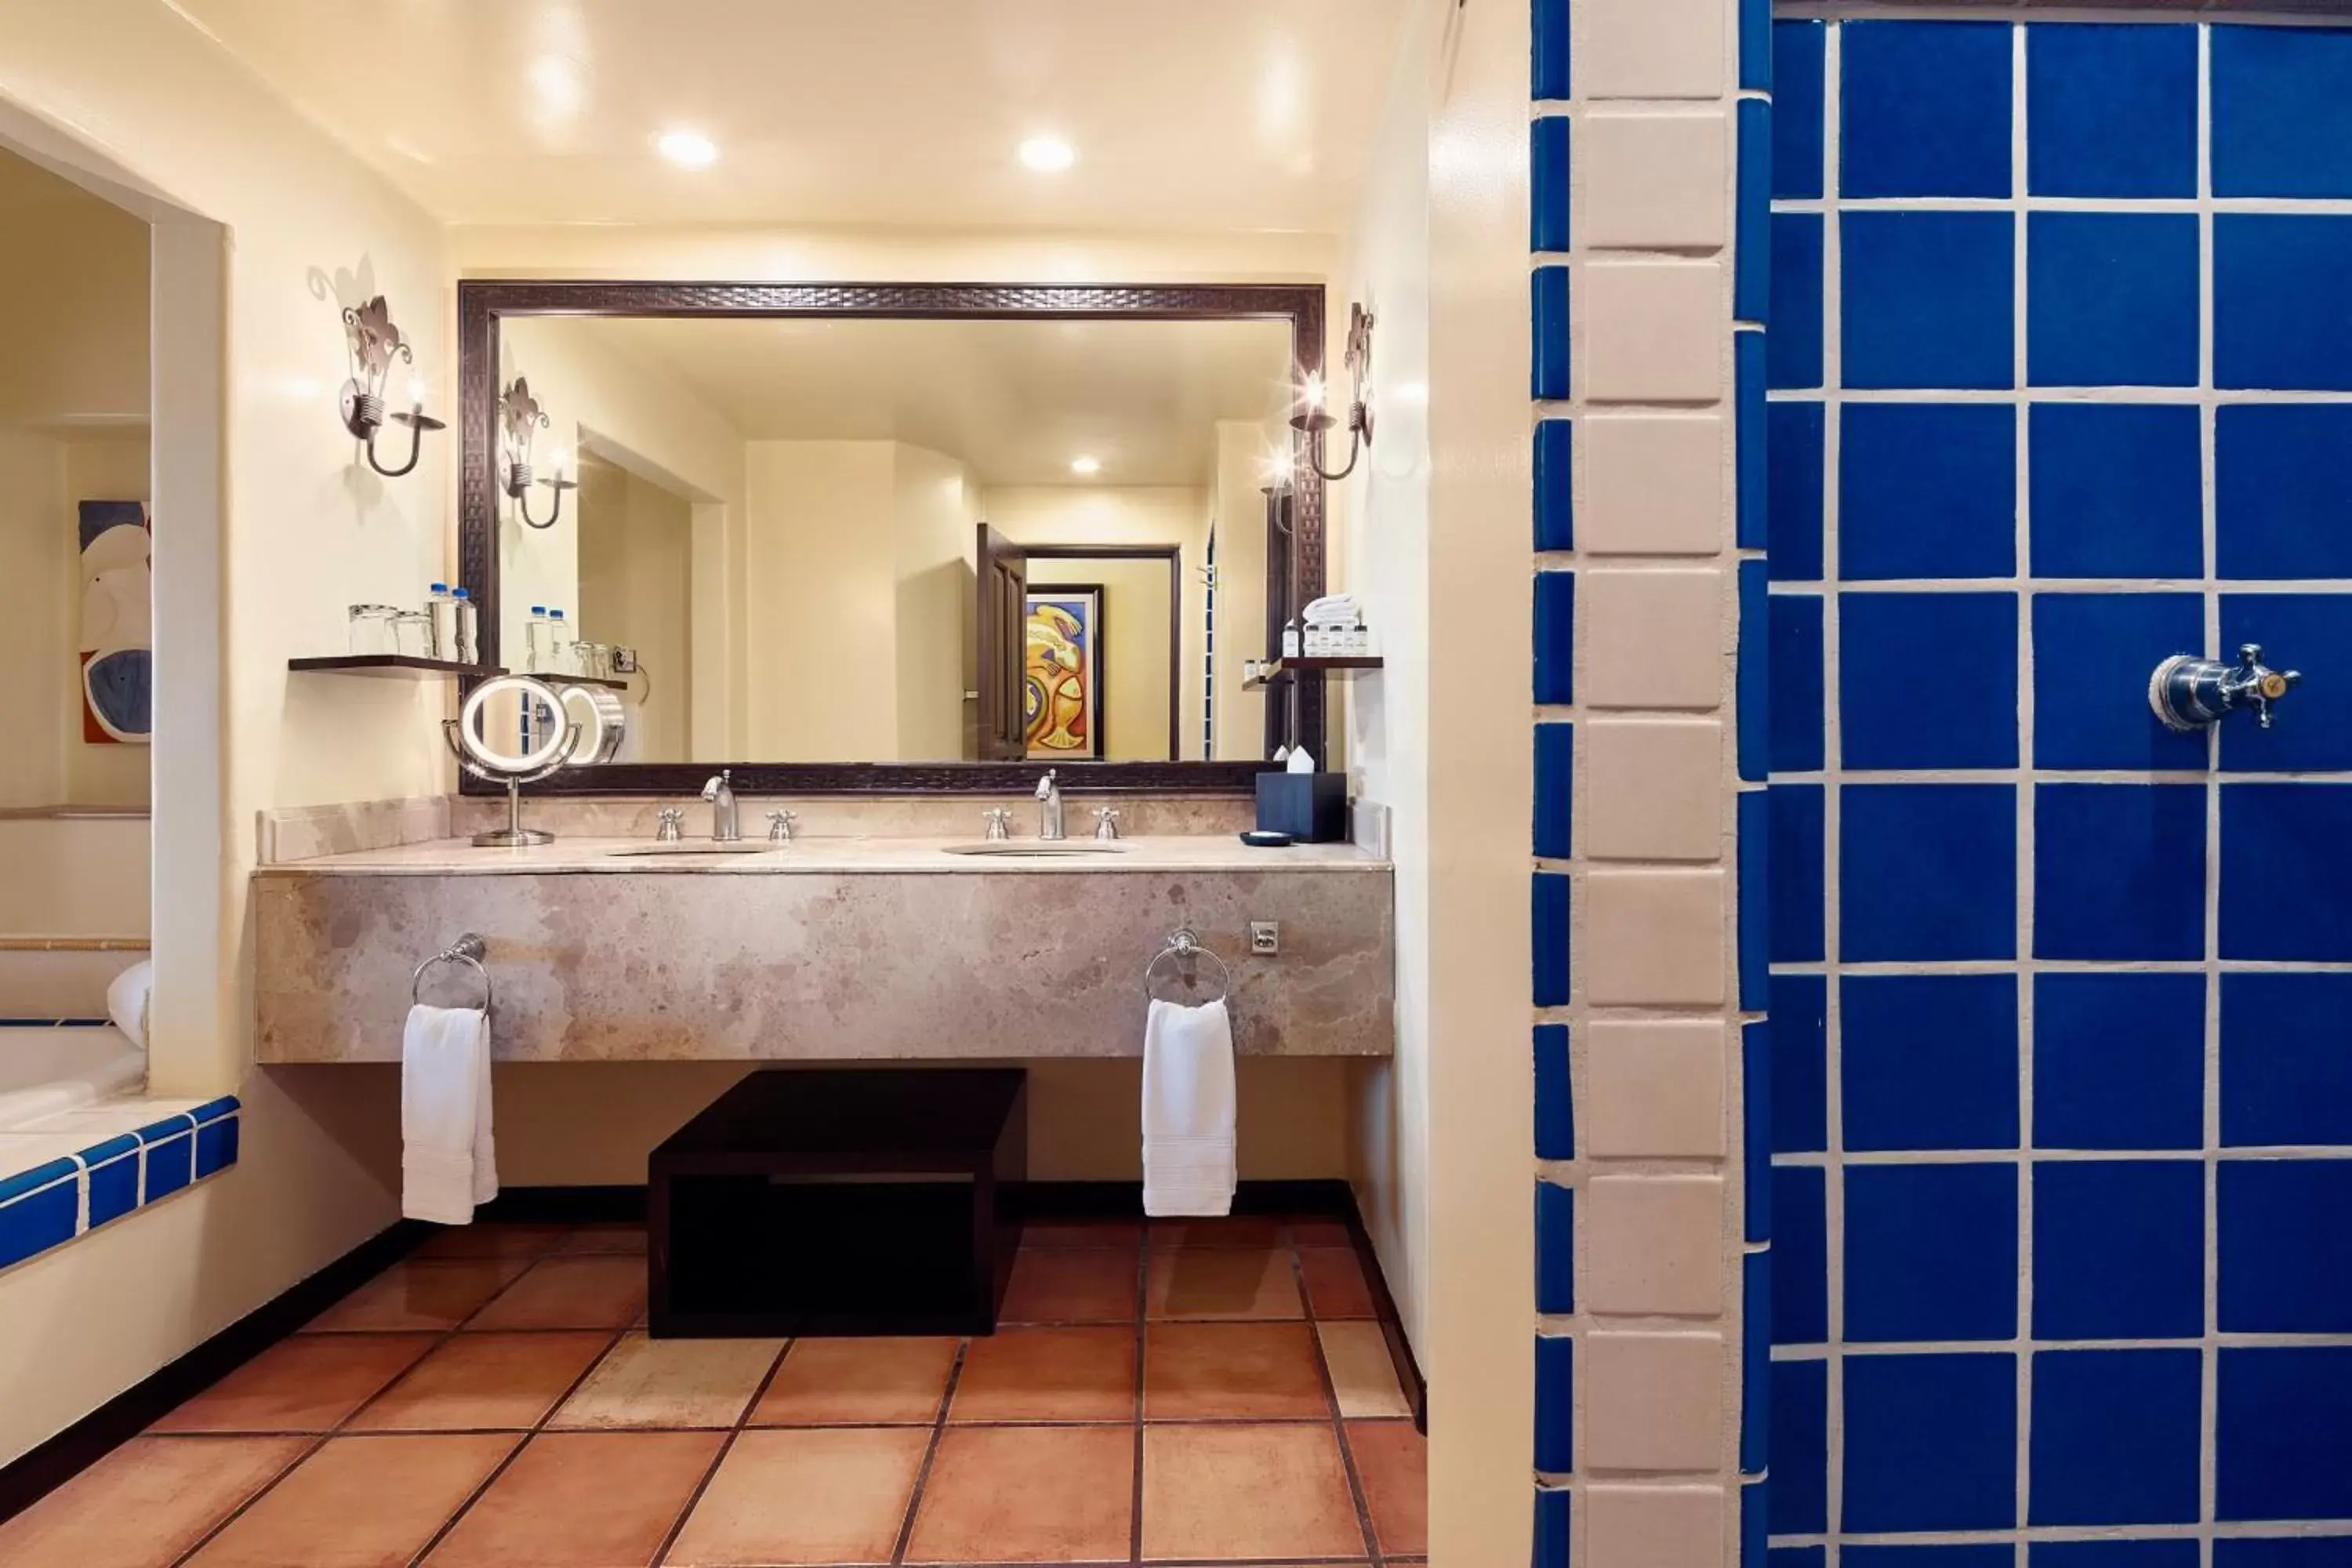 Photo of the whole room, Bathroom in Hacienda del Mar Los Cabos